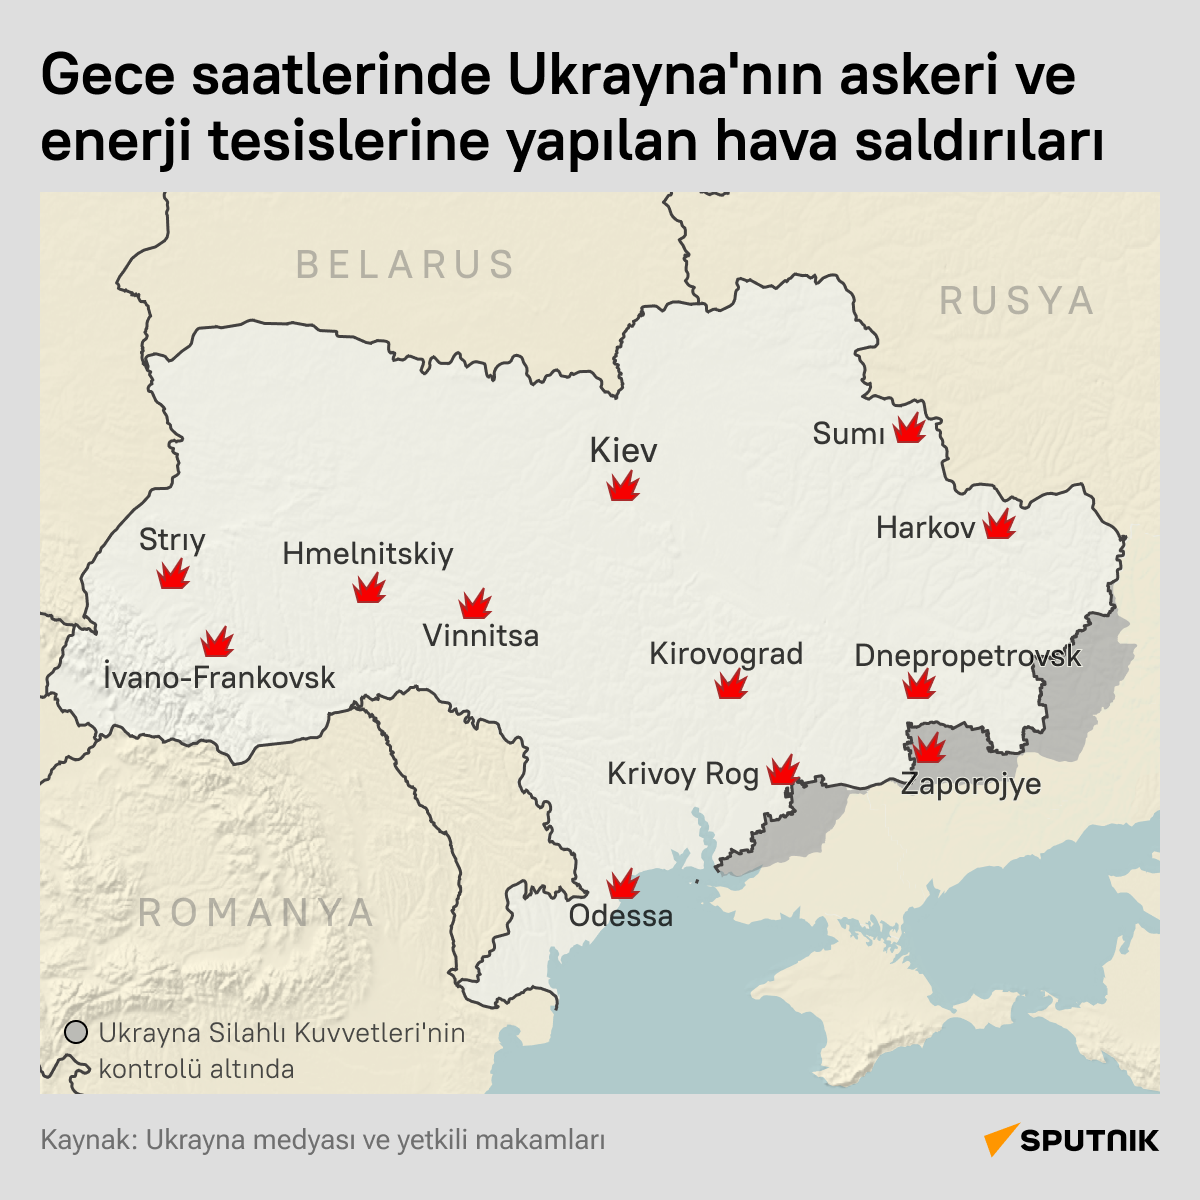  Rusya, Ukrayna'nın askeri ve enerji tesislerini hedef aldı 
 - Sputnik Türkiye